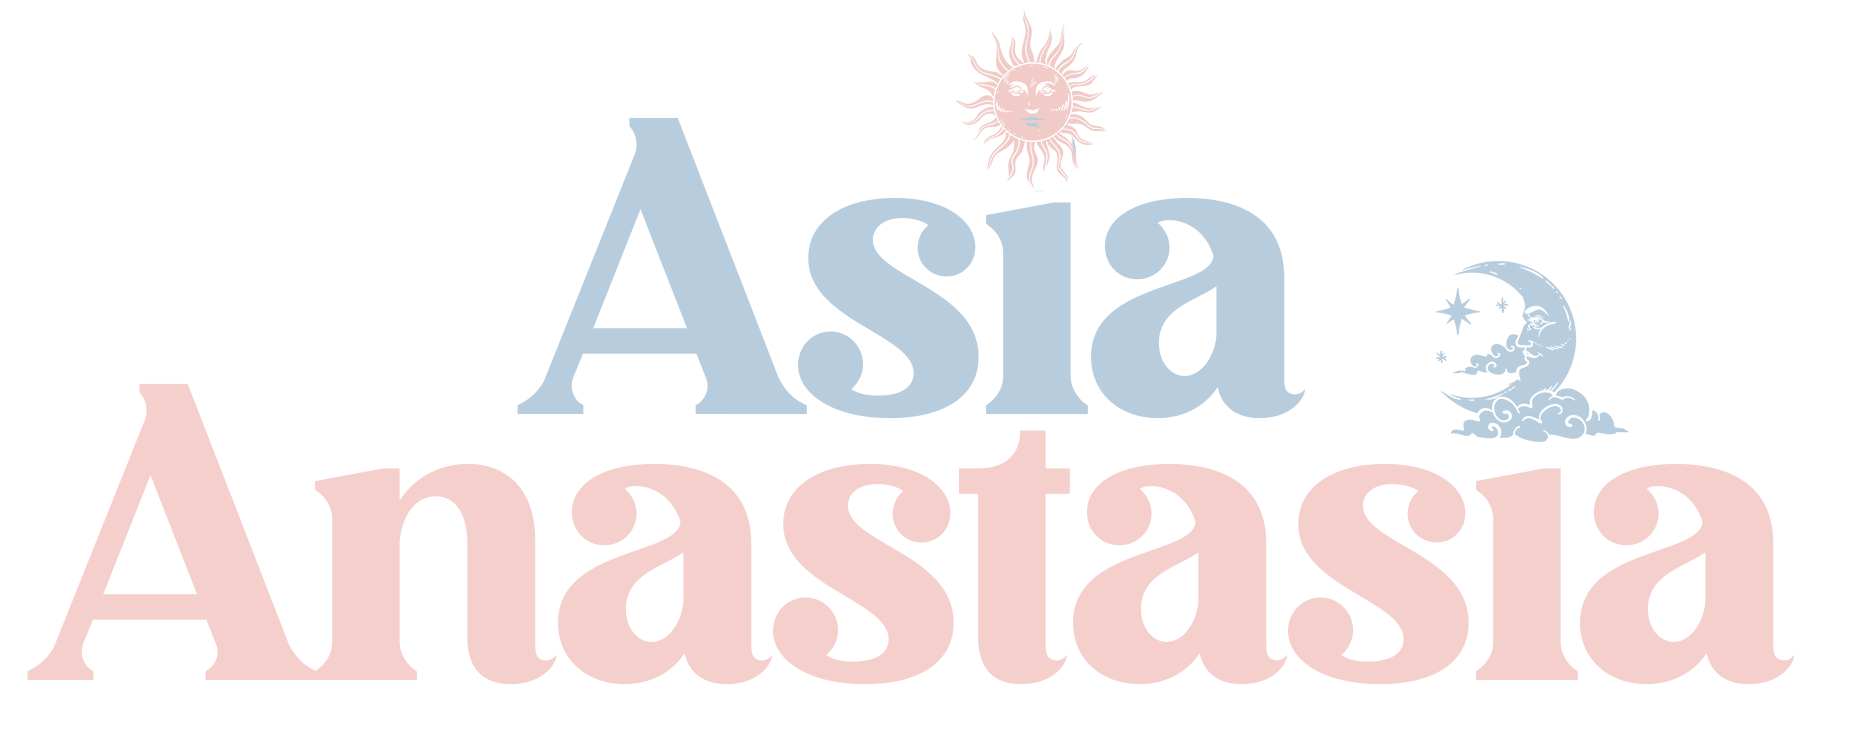 Asia Anastasia